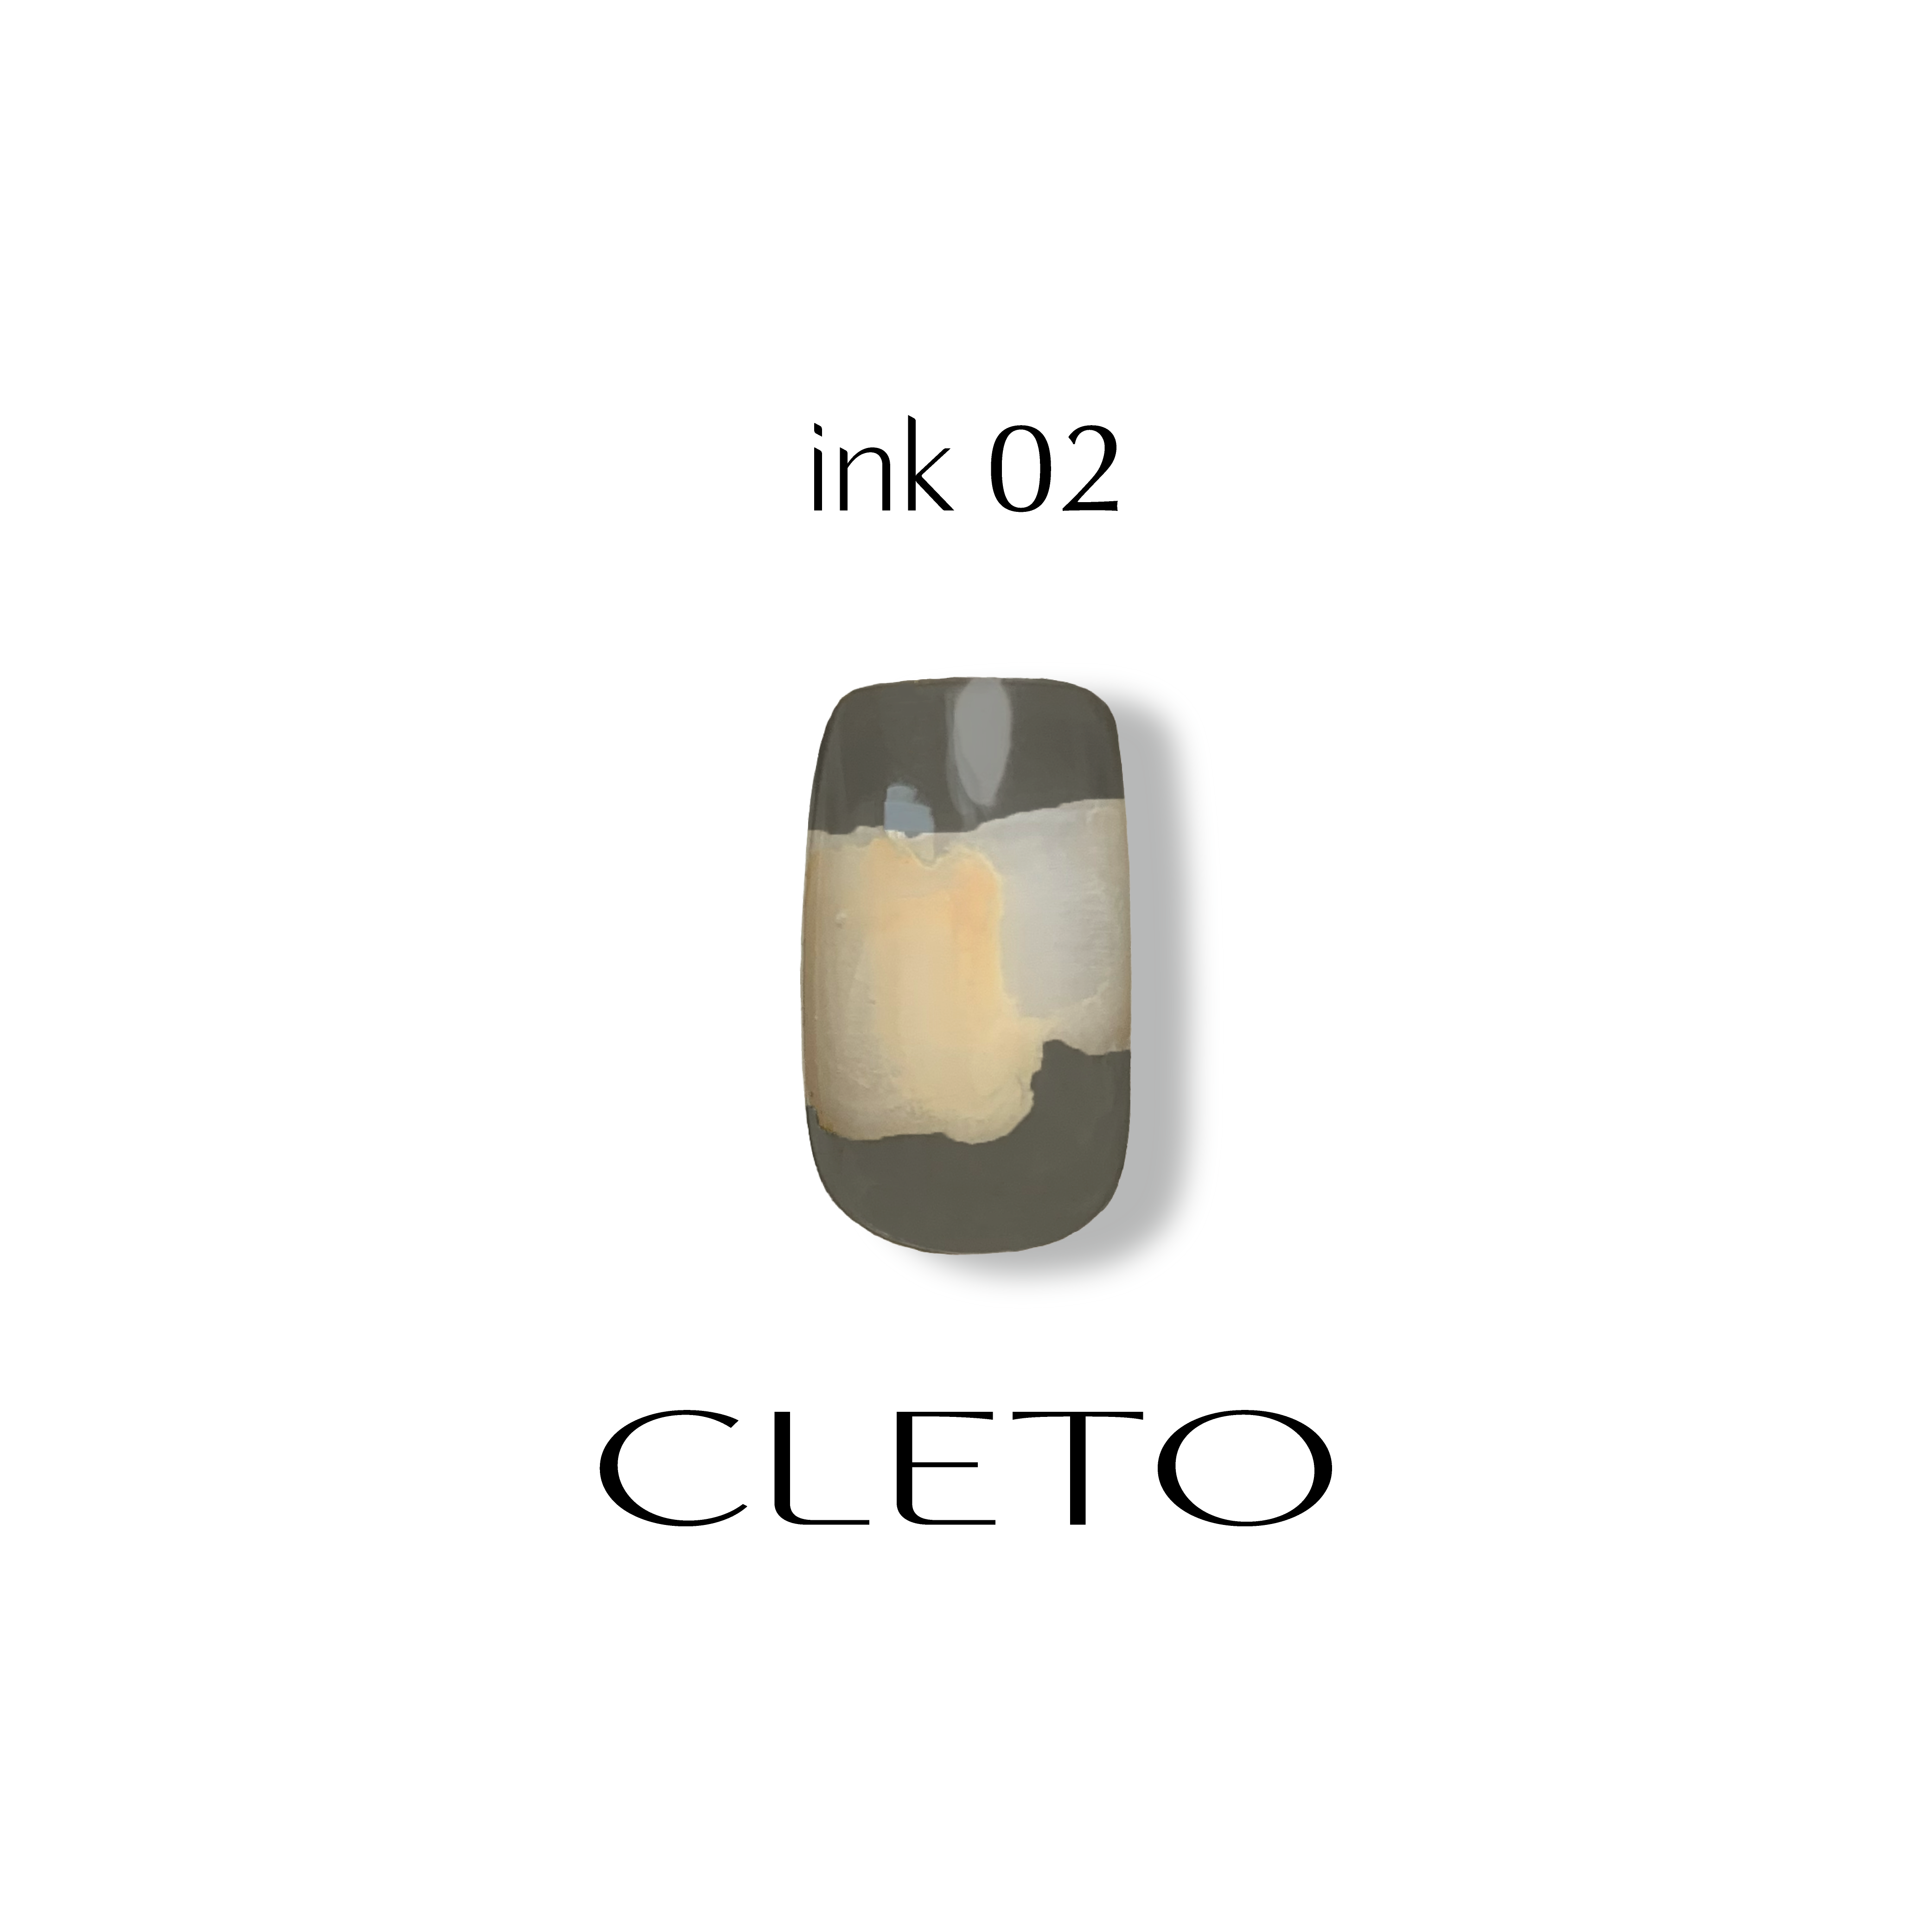 Cleto Ink 02